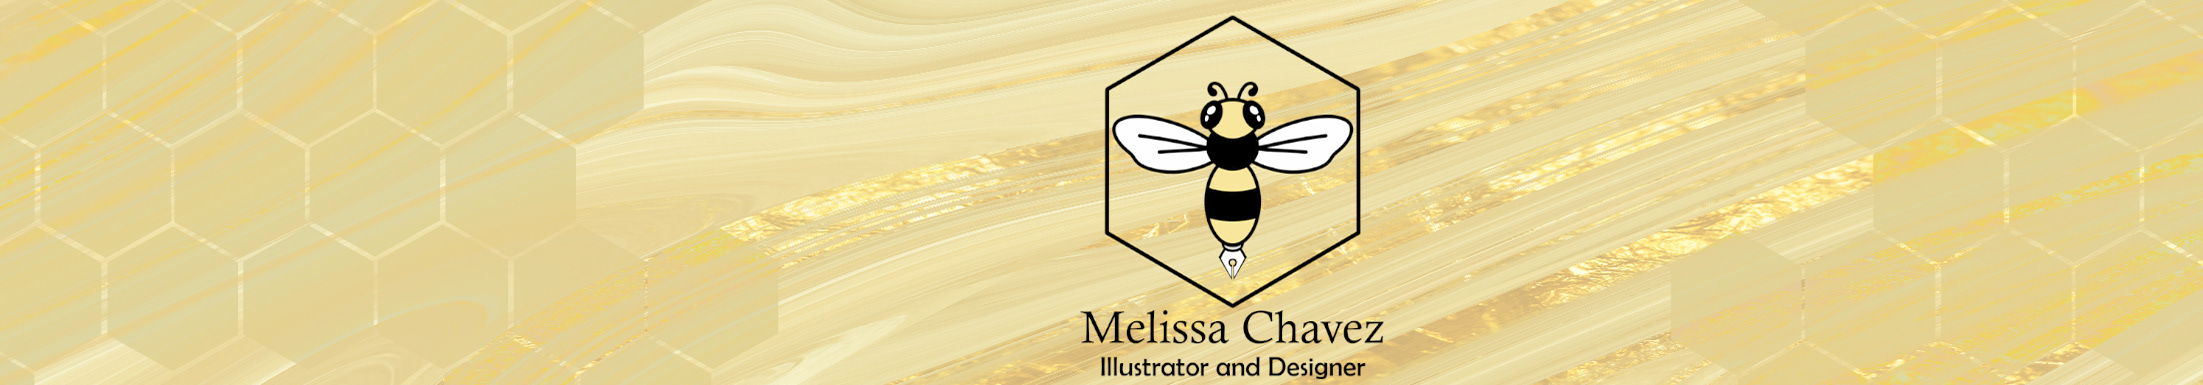 Banner de perfil de Melissa Chavez